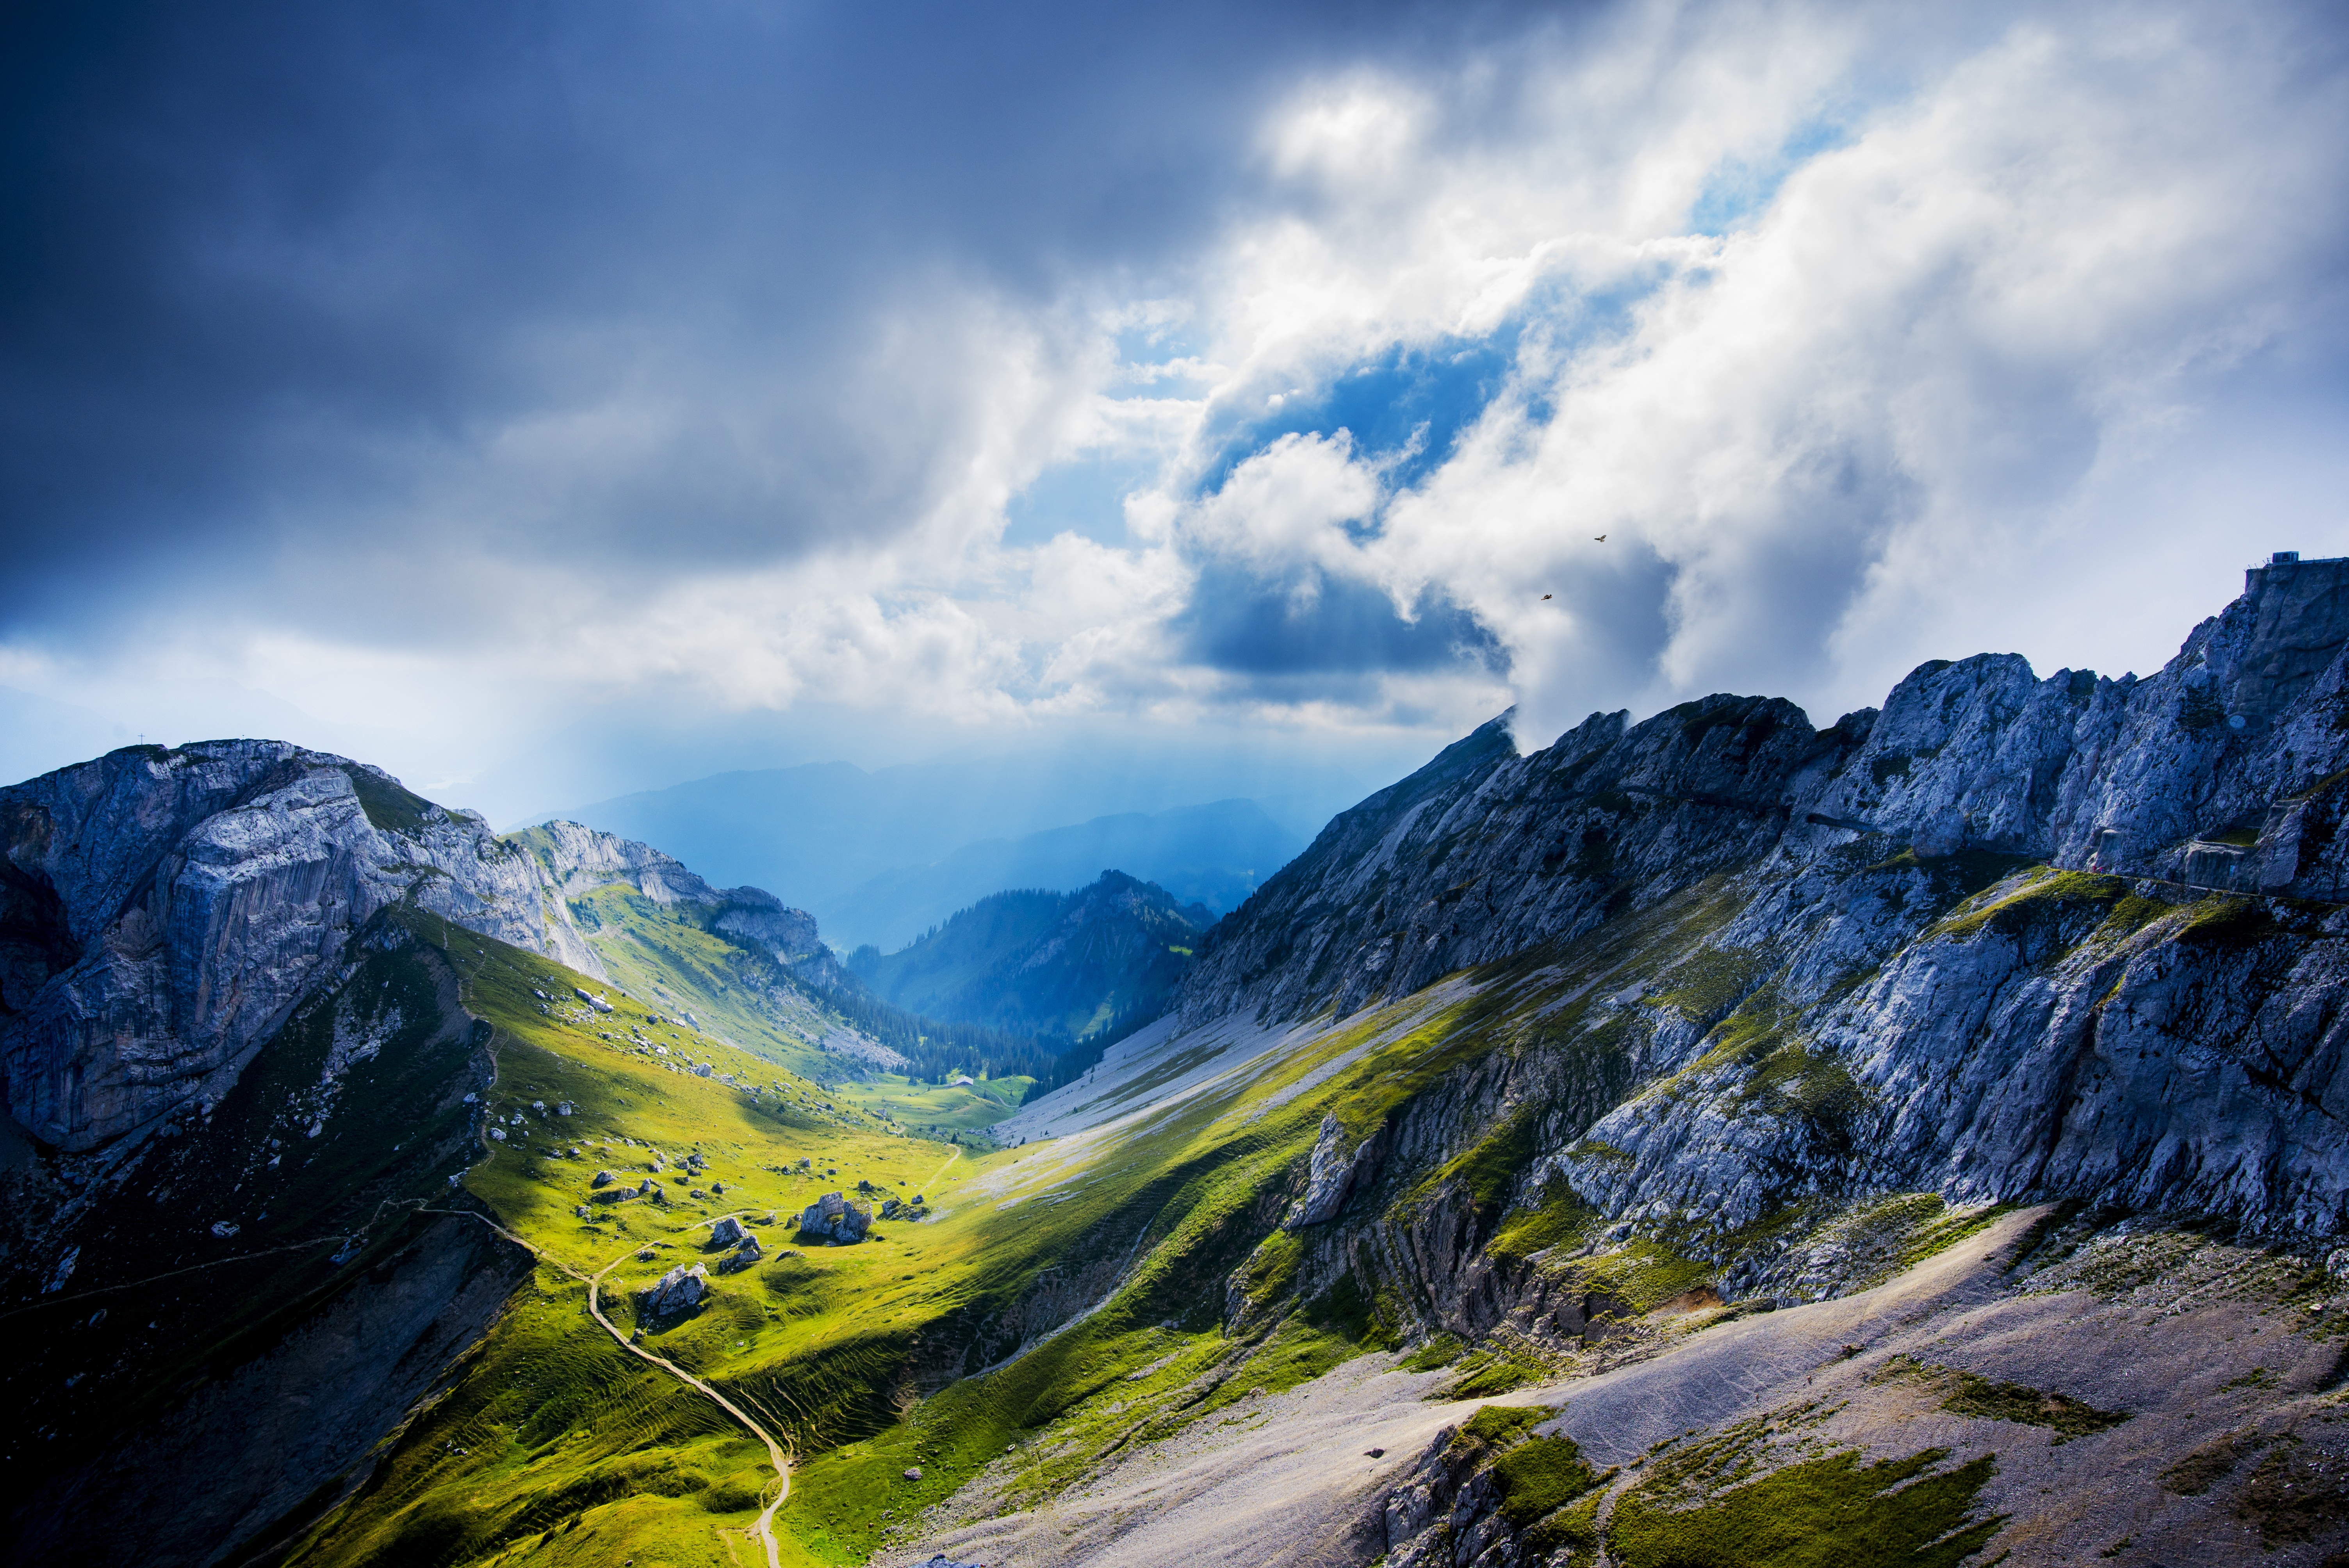 3840x2160. Горы Альпы Швейцария Долина скалы. Природа Швейцарии в 8к. Аргентина Альпы. Горы Швейцарии 4k.